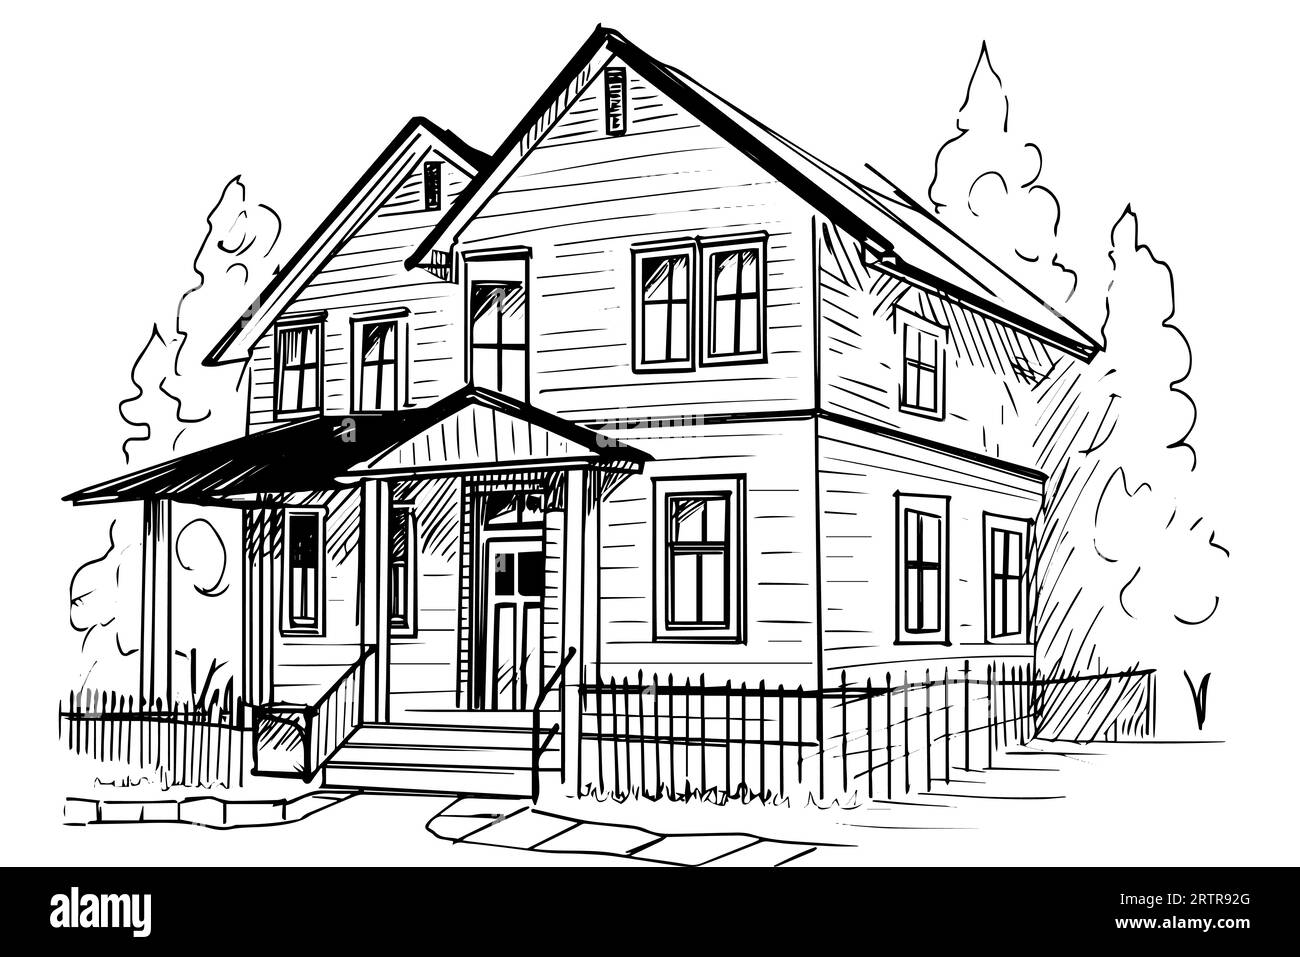 Schizzo vettoriale in bianco e nero di una casa in legno d'epoca. Illustrazione dello stile di incisione. Illustrazione Vettoriale